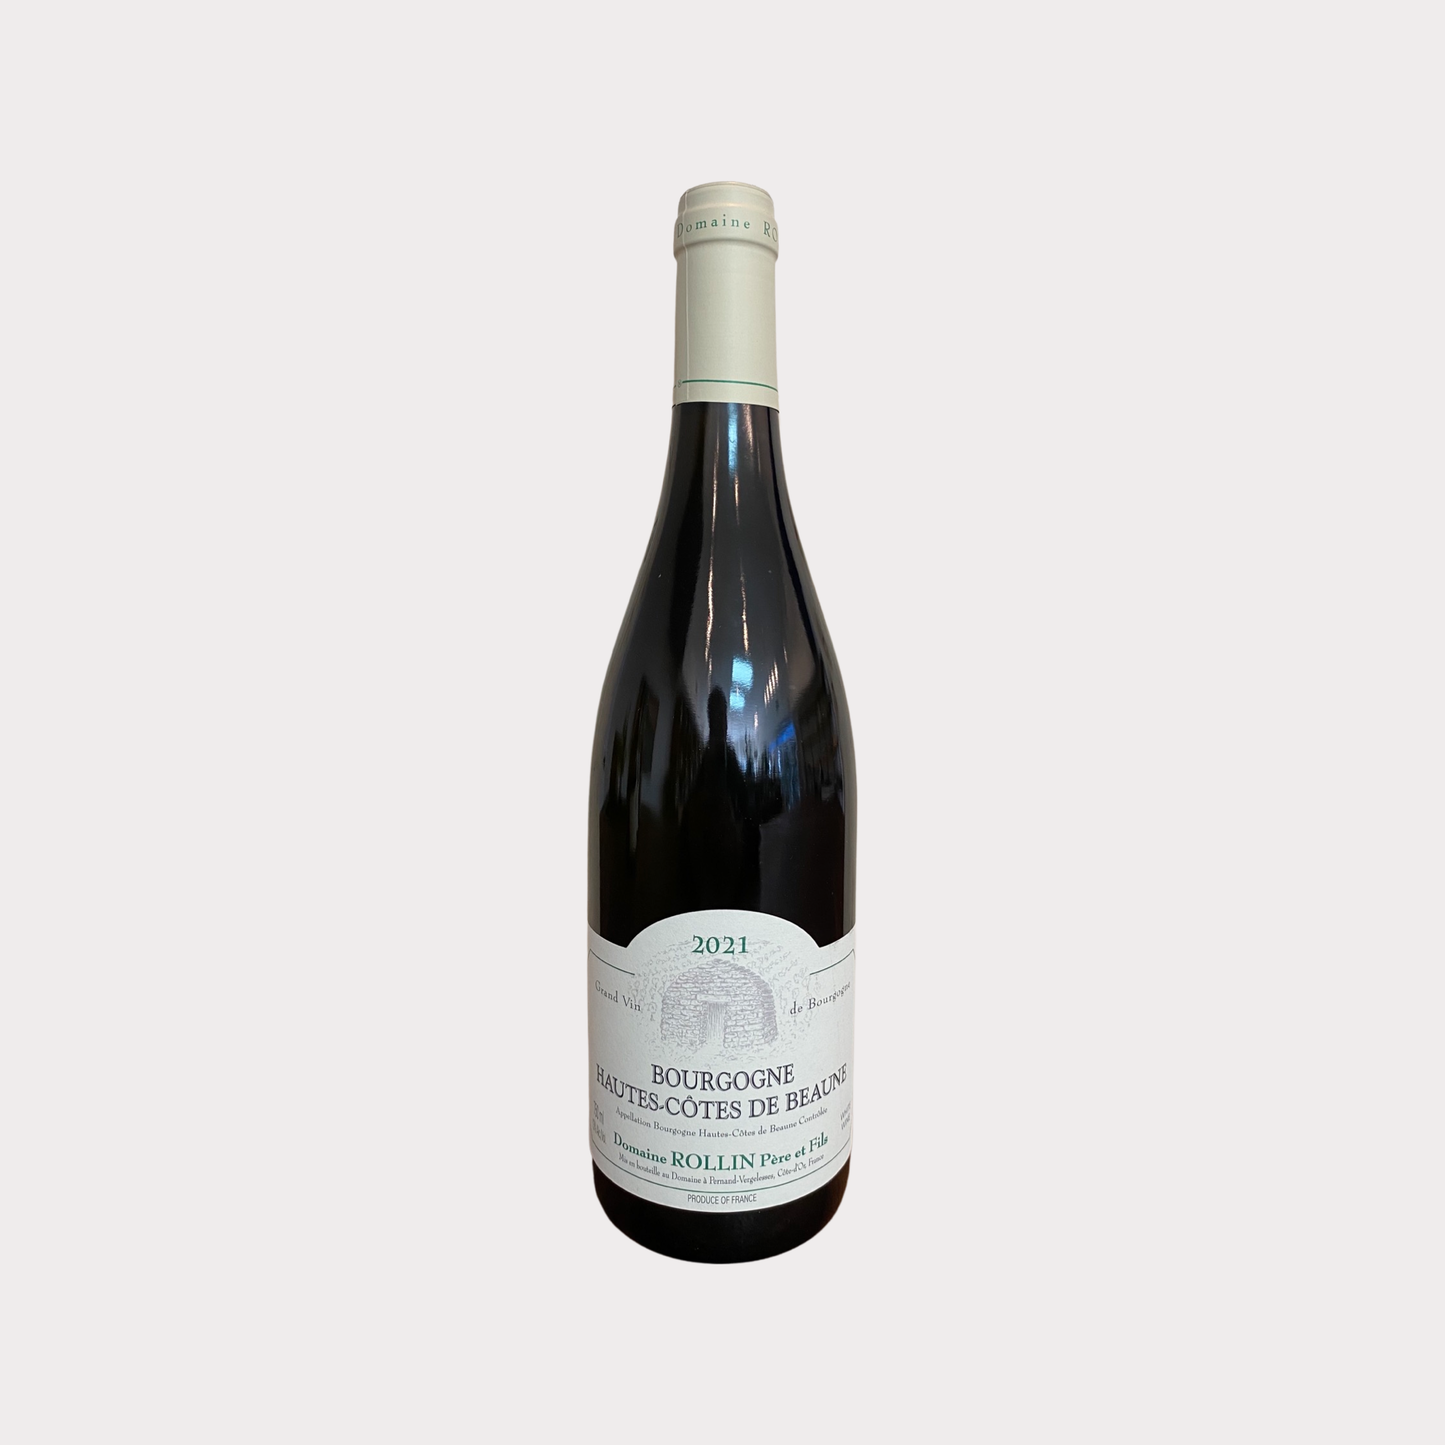 2021 Domaine Rollin Pere & Fils Bourgogne Hautes-Cotes de Beaune Blanc